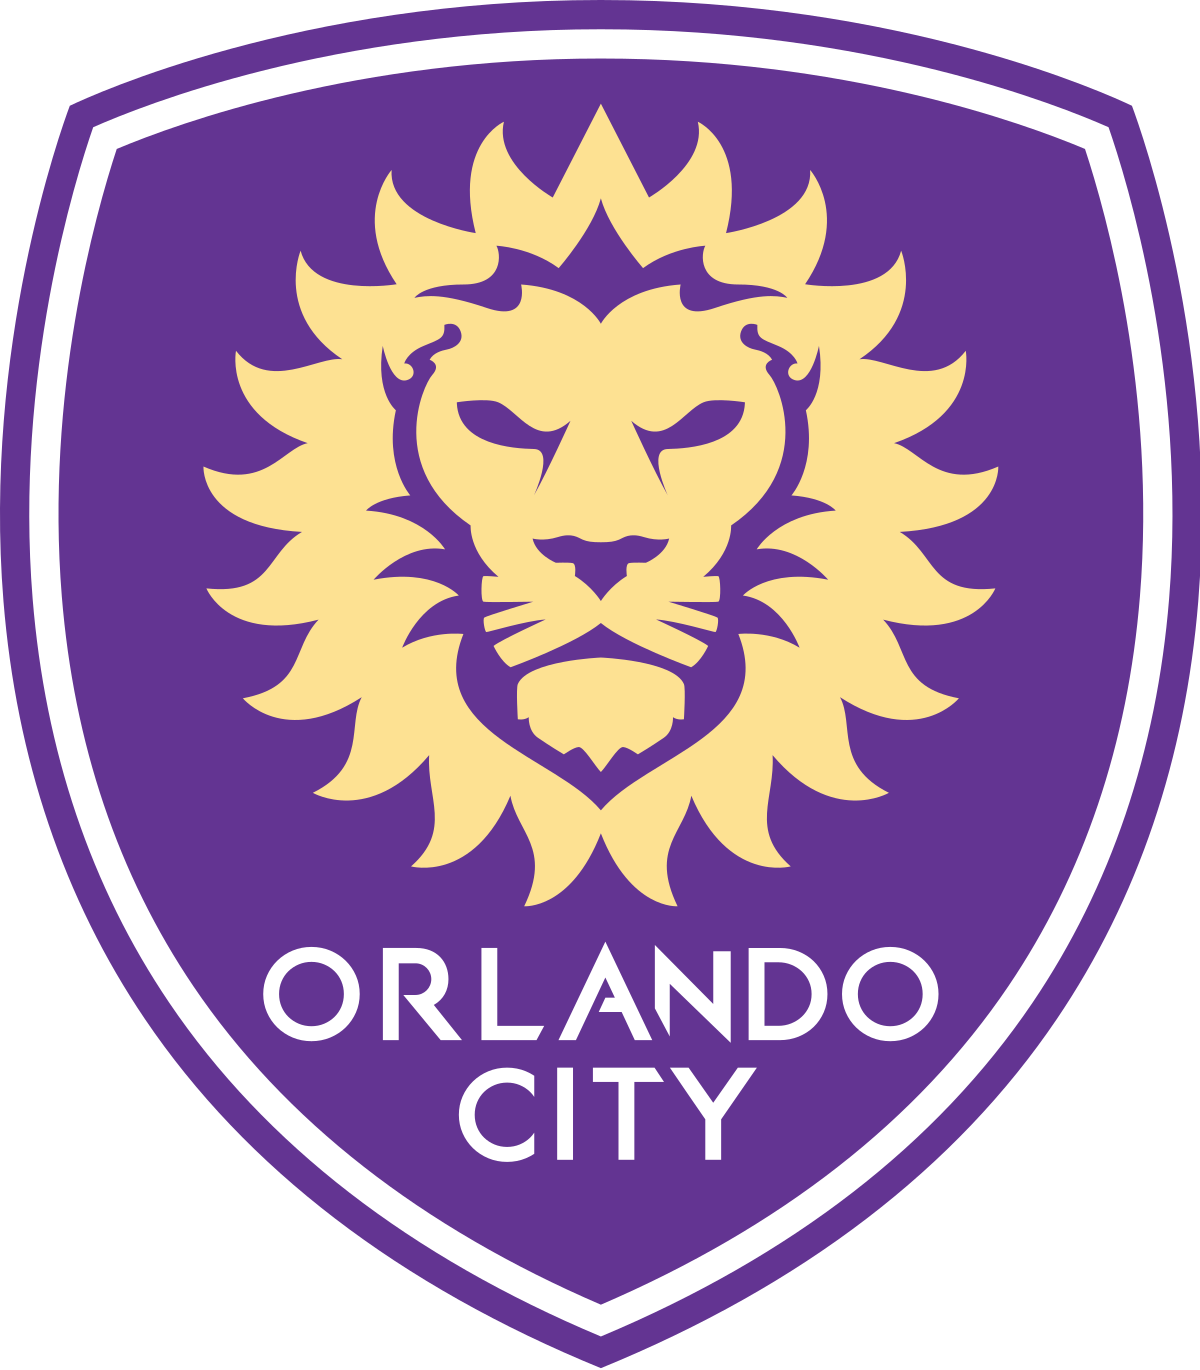 Orlando City SC - Wikipedia